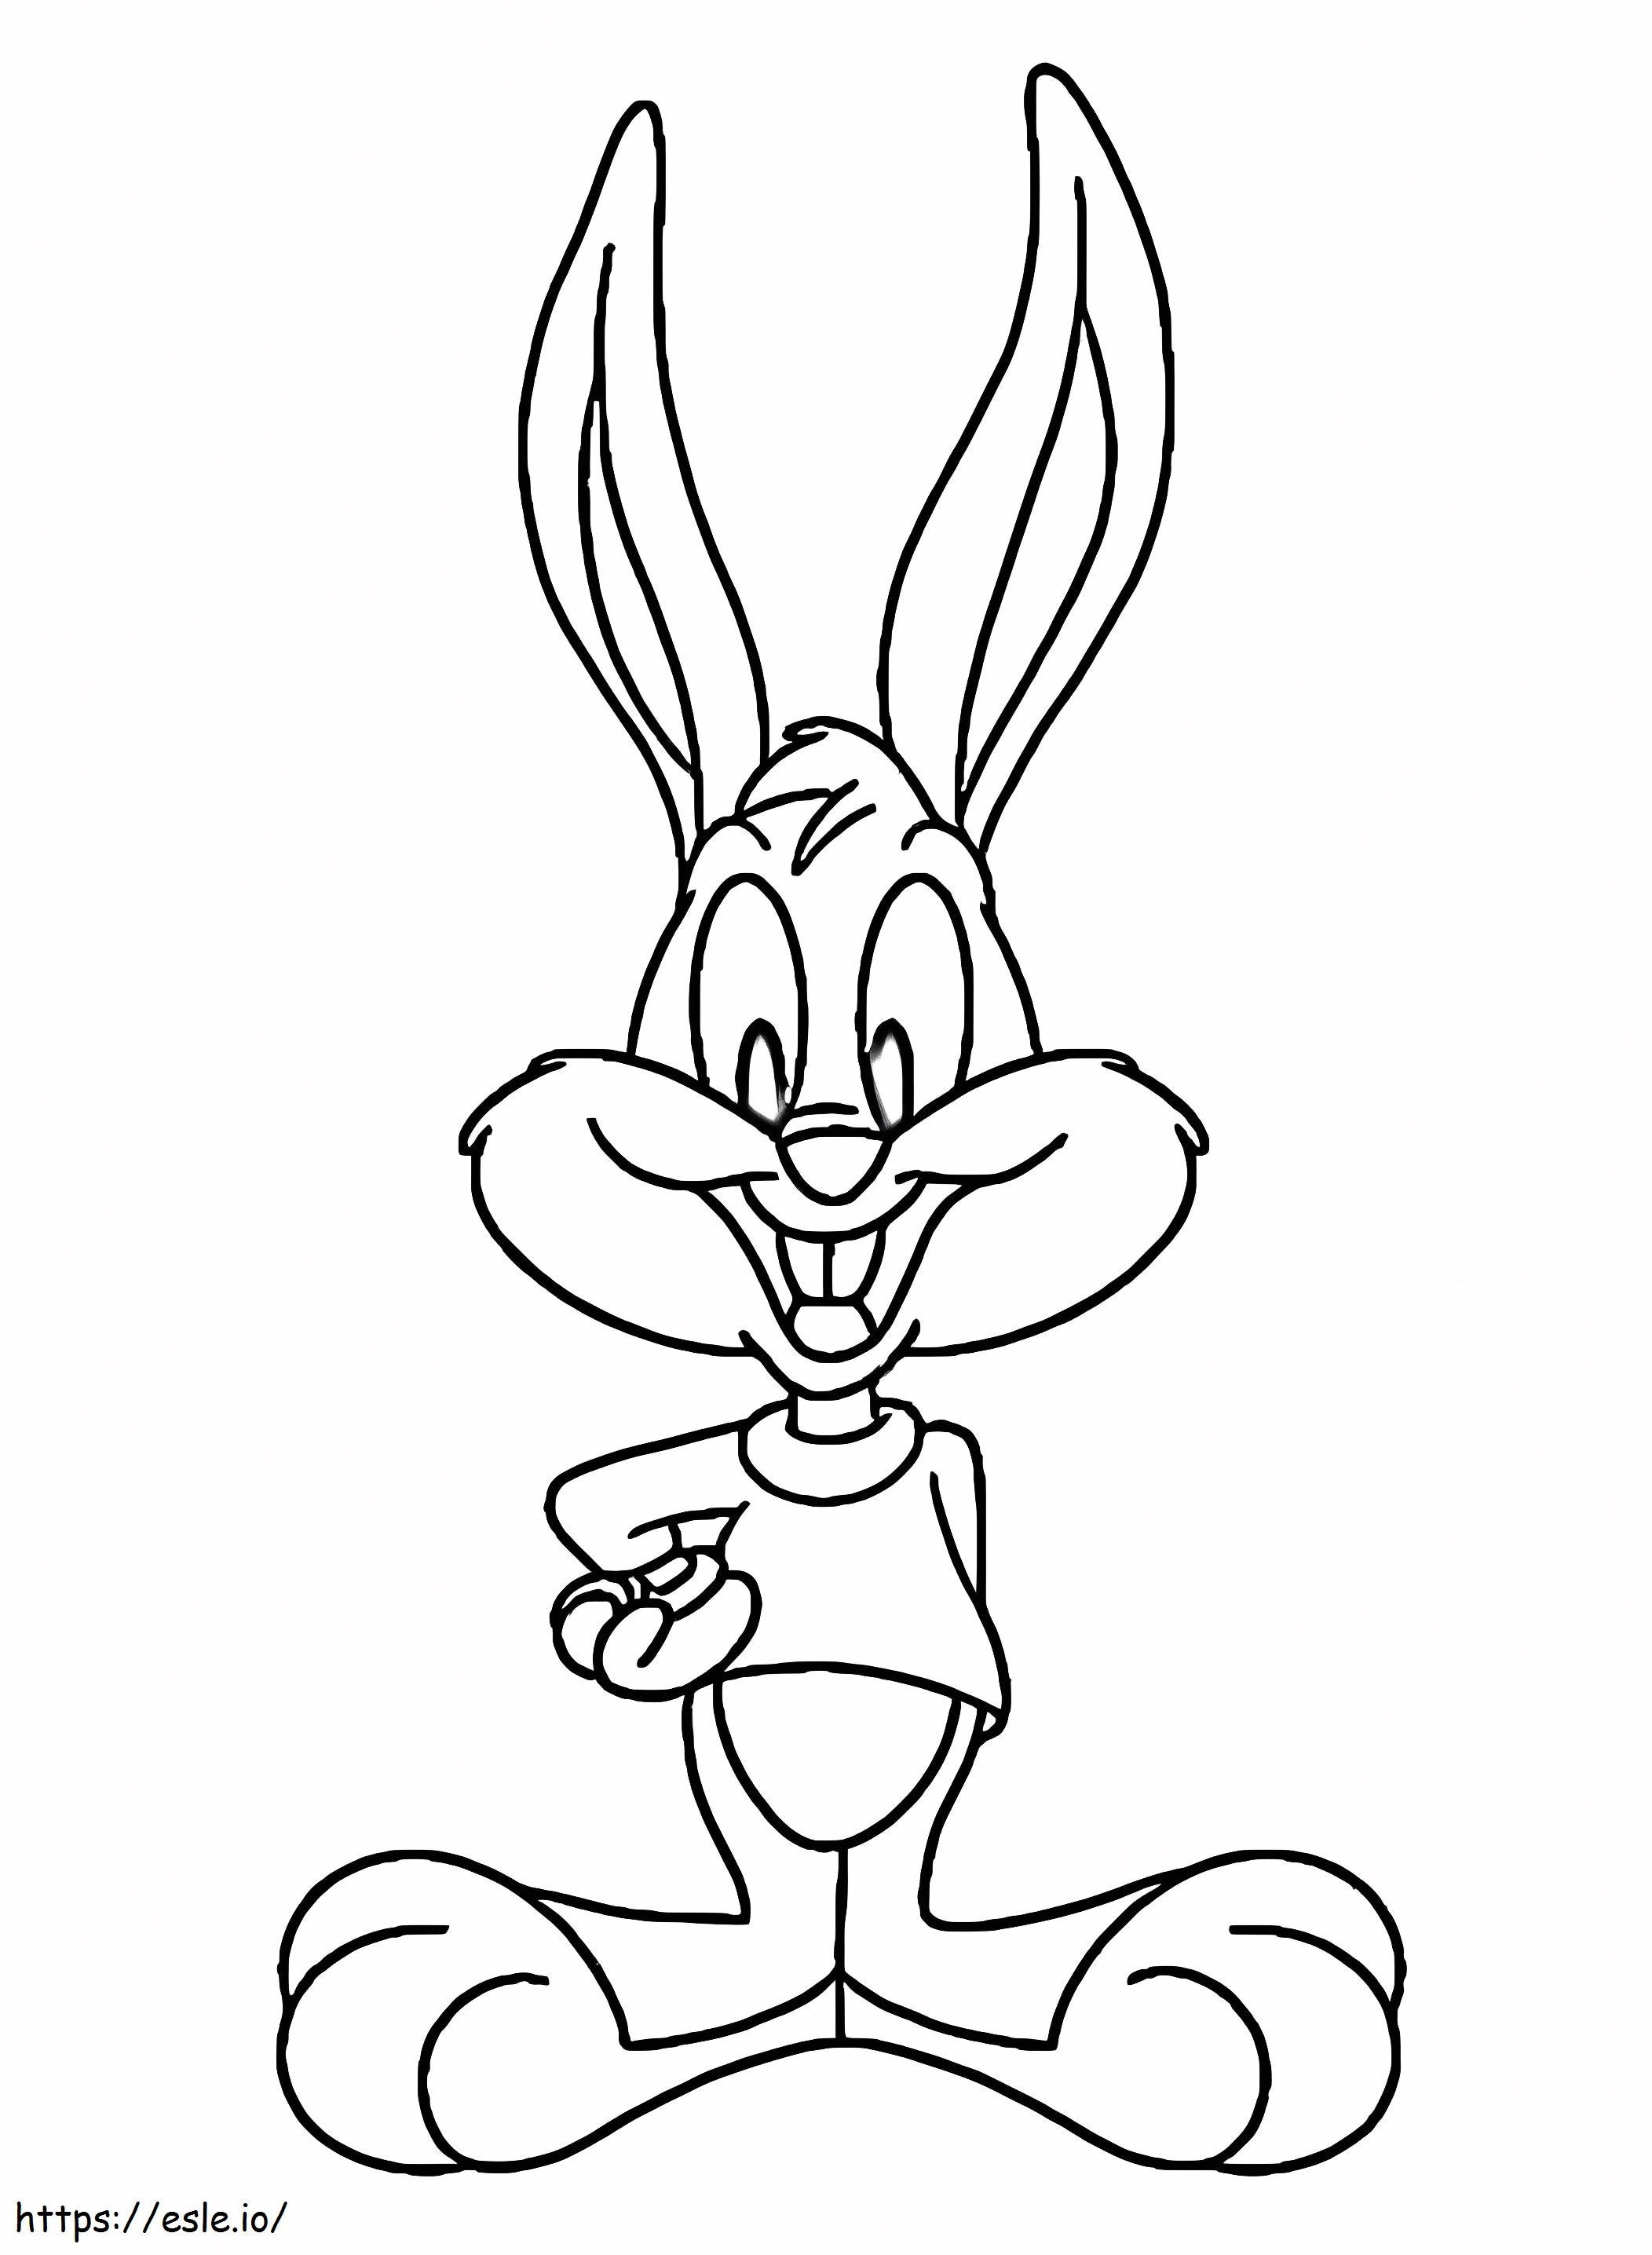 Freundlicher Buster Bunny ausmalbilder